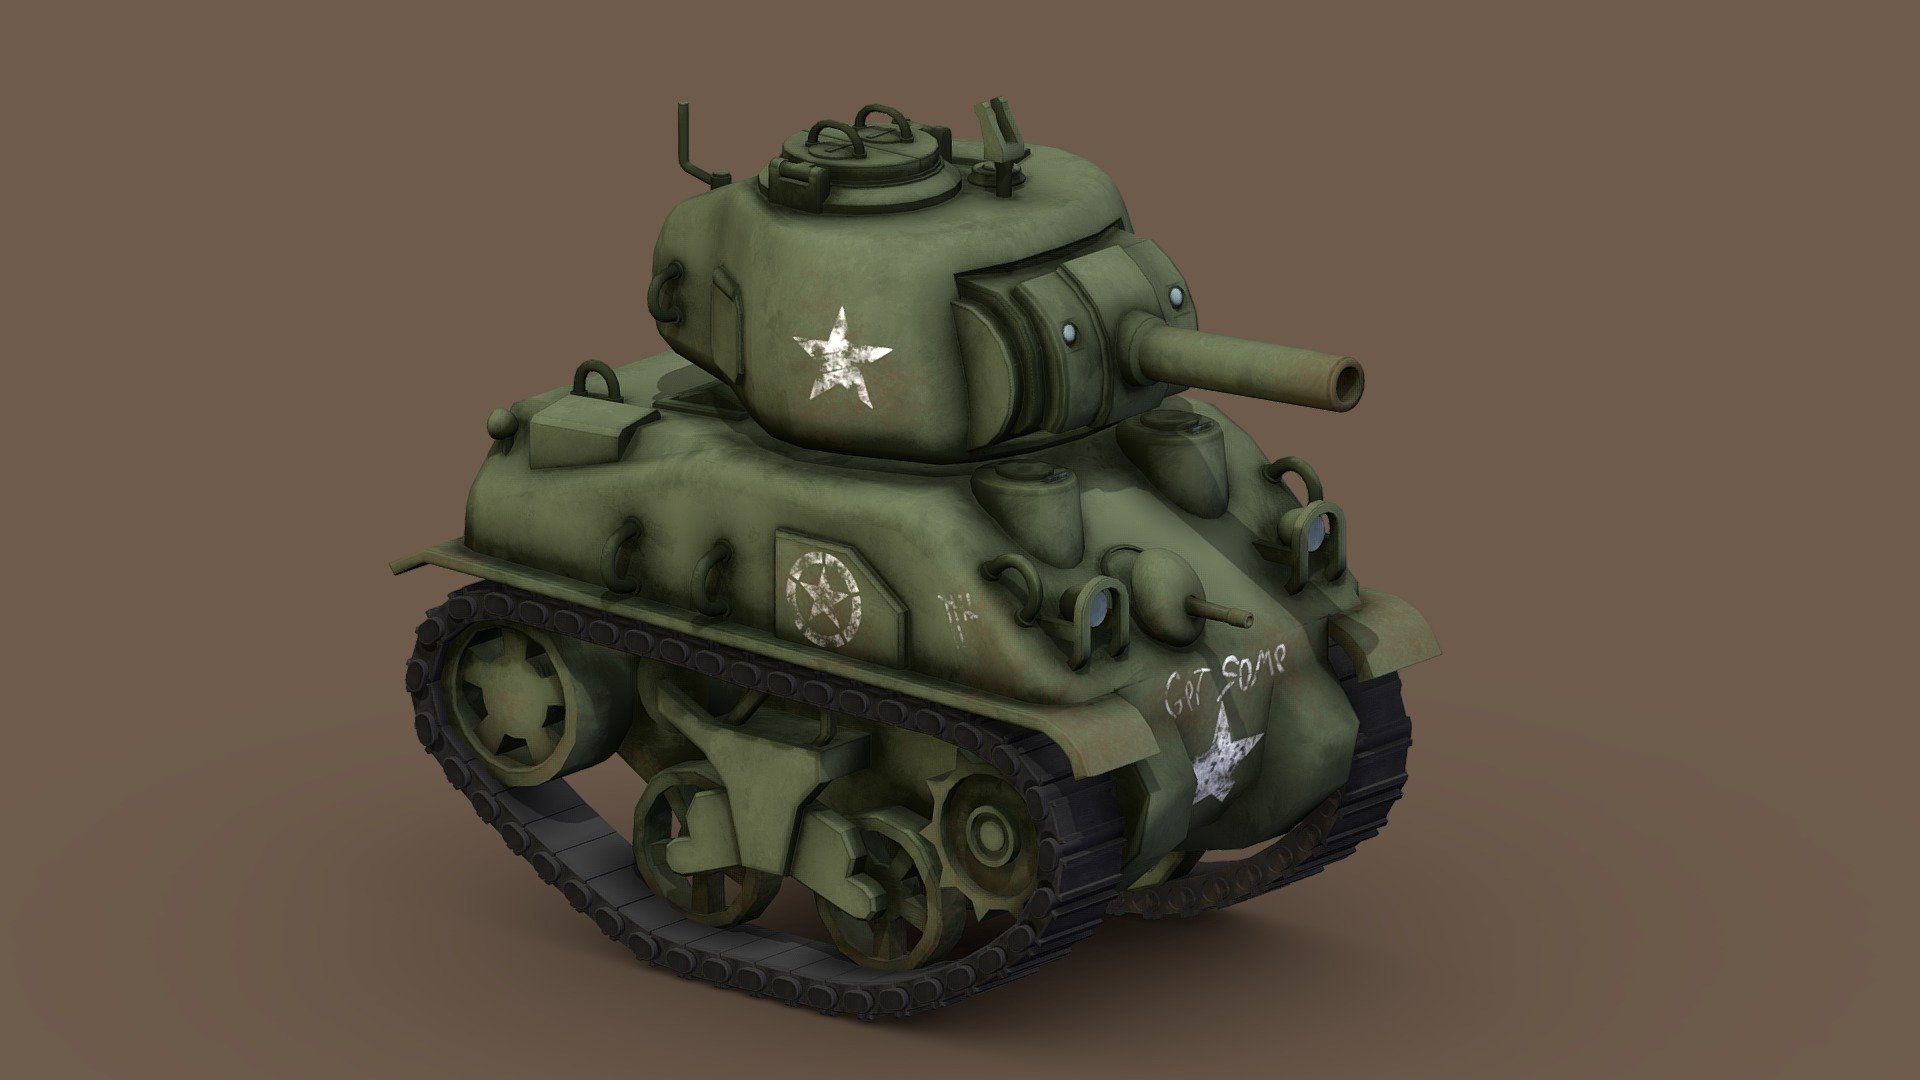 Stylized Cartoon Sherman Tank - Buy Royalty Free 3D model by TallinJH  (@omgitstallin) [c4f1849]